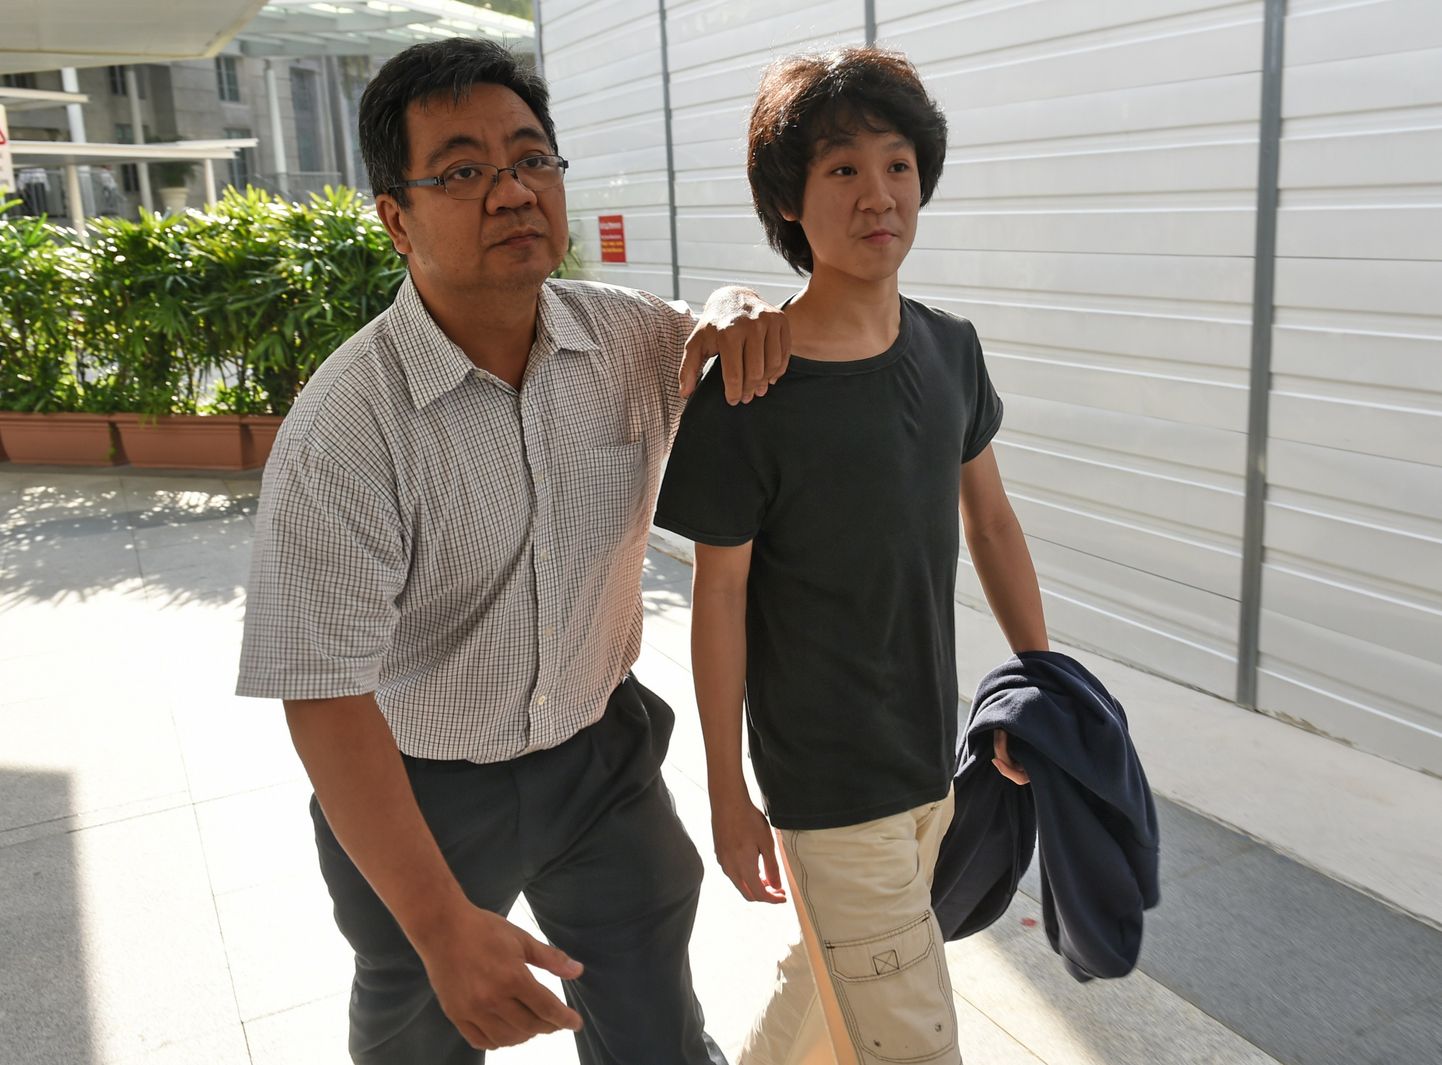 16-aastane Amos Yee Singapuri asutajat ja kristlust kritiseerinud video pärast isaga kohtusse suundumas.